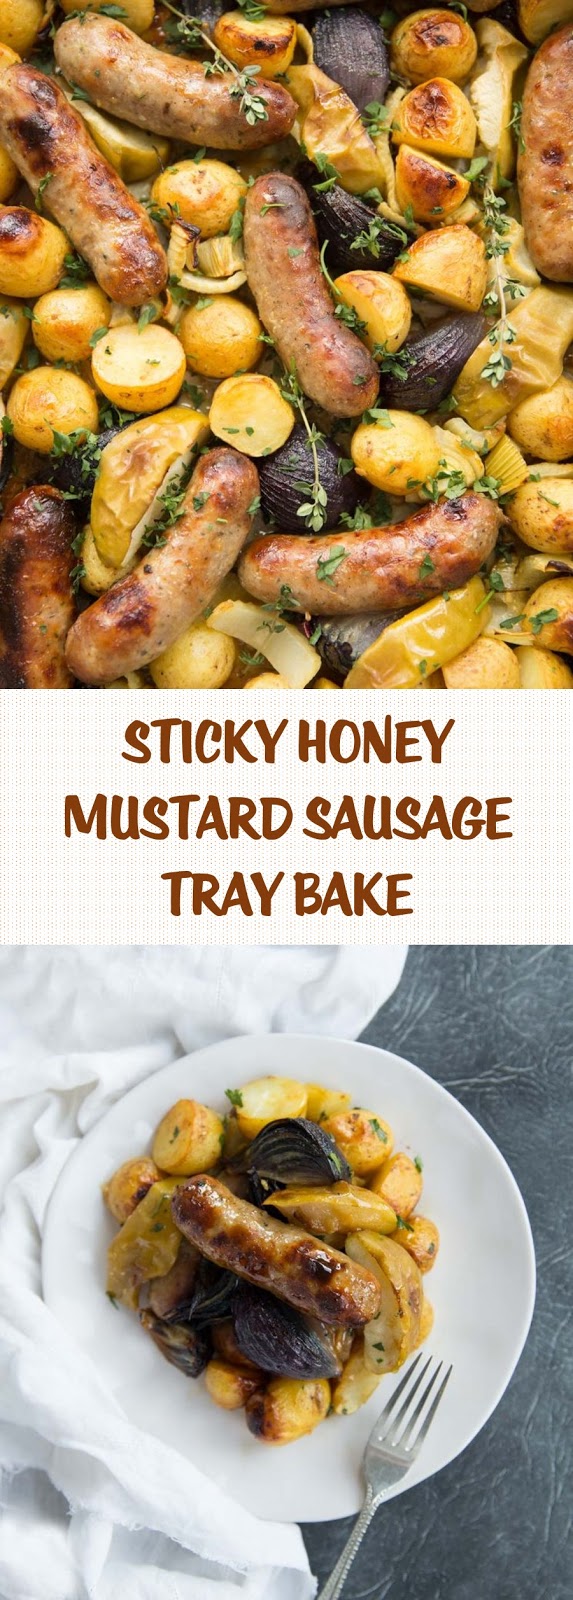 Sticky Honey Mustard Sausage Tray Bake